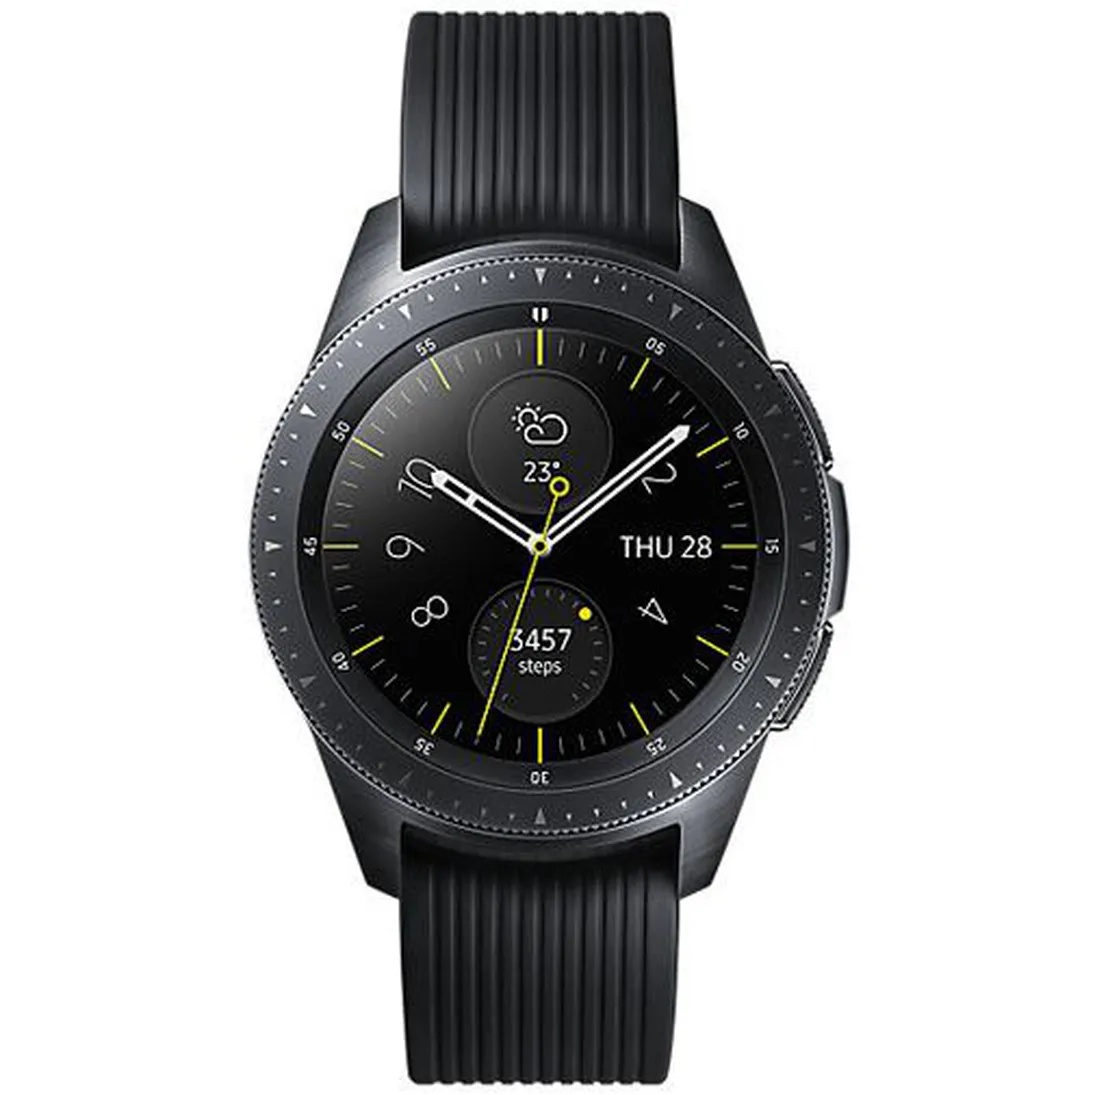 SM-R805 Galaxy Watch 46mm (4G/LTE Version)